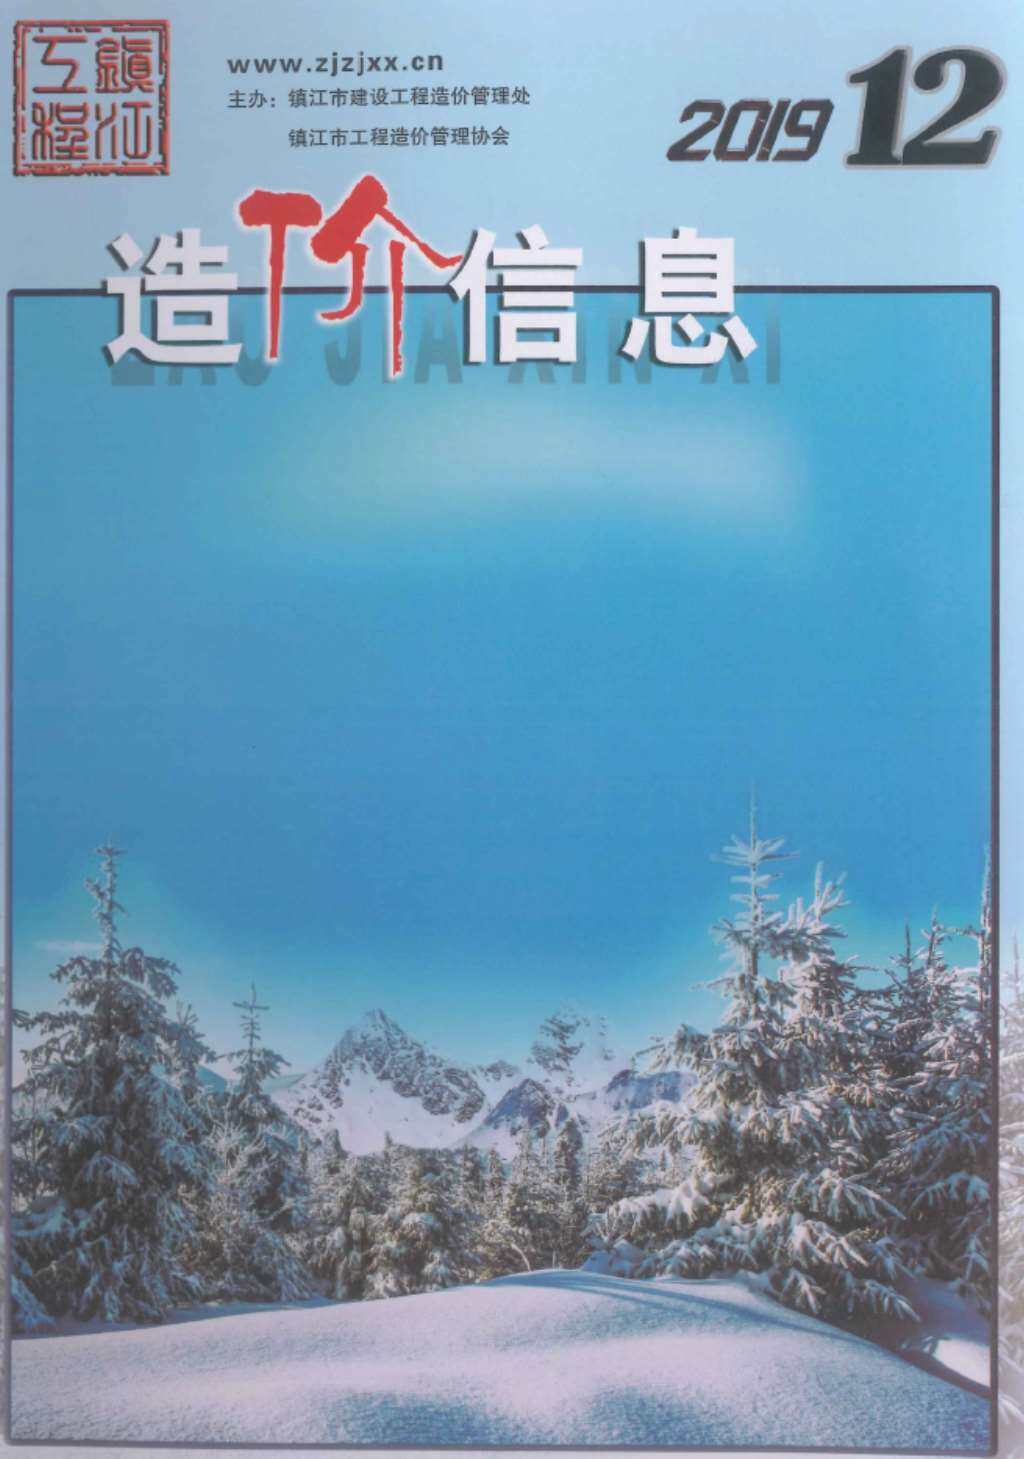 镇江市2019年12月工程造价信息期刊封面